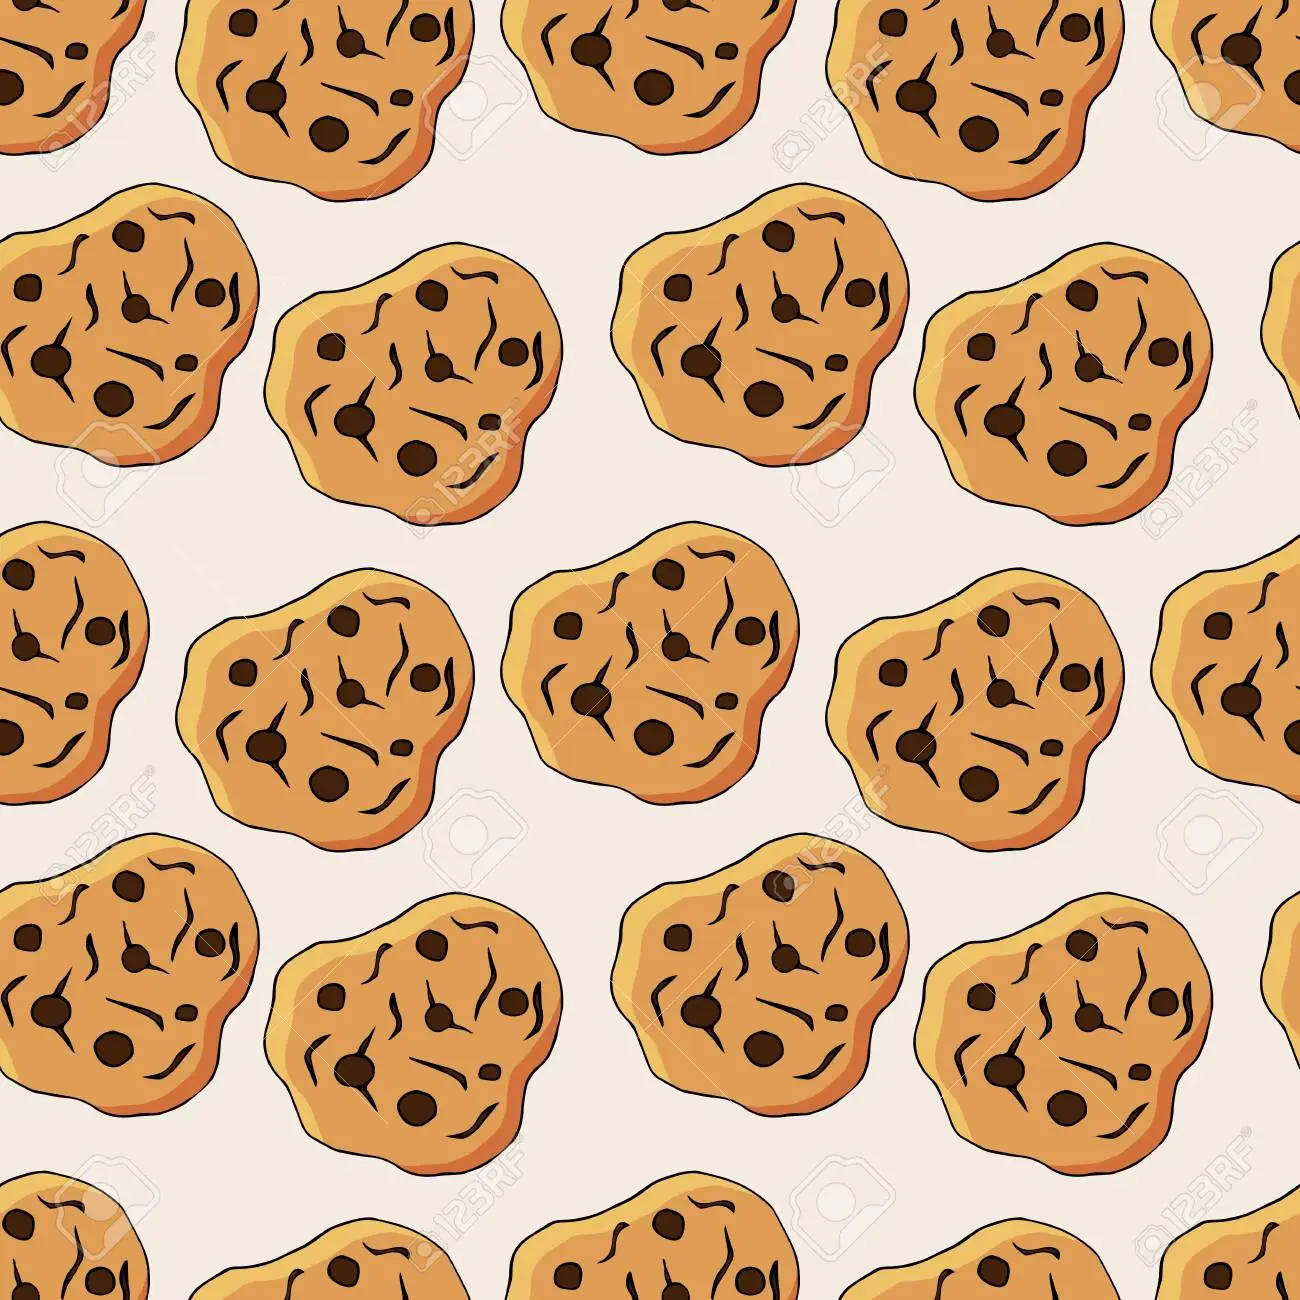 Odd-shaped Cartoon Cookie Batch Wallpaper